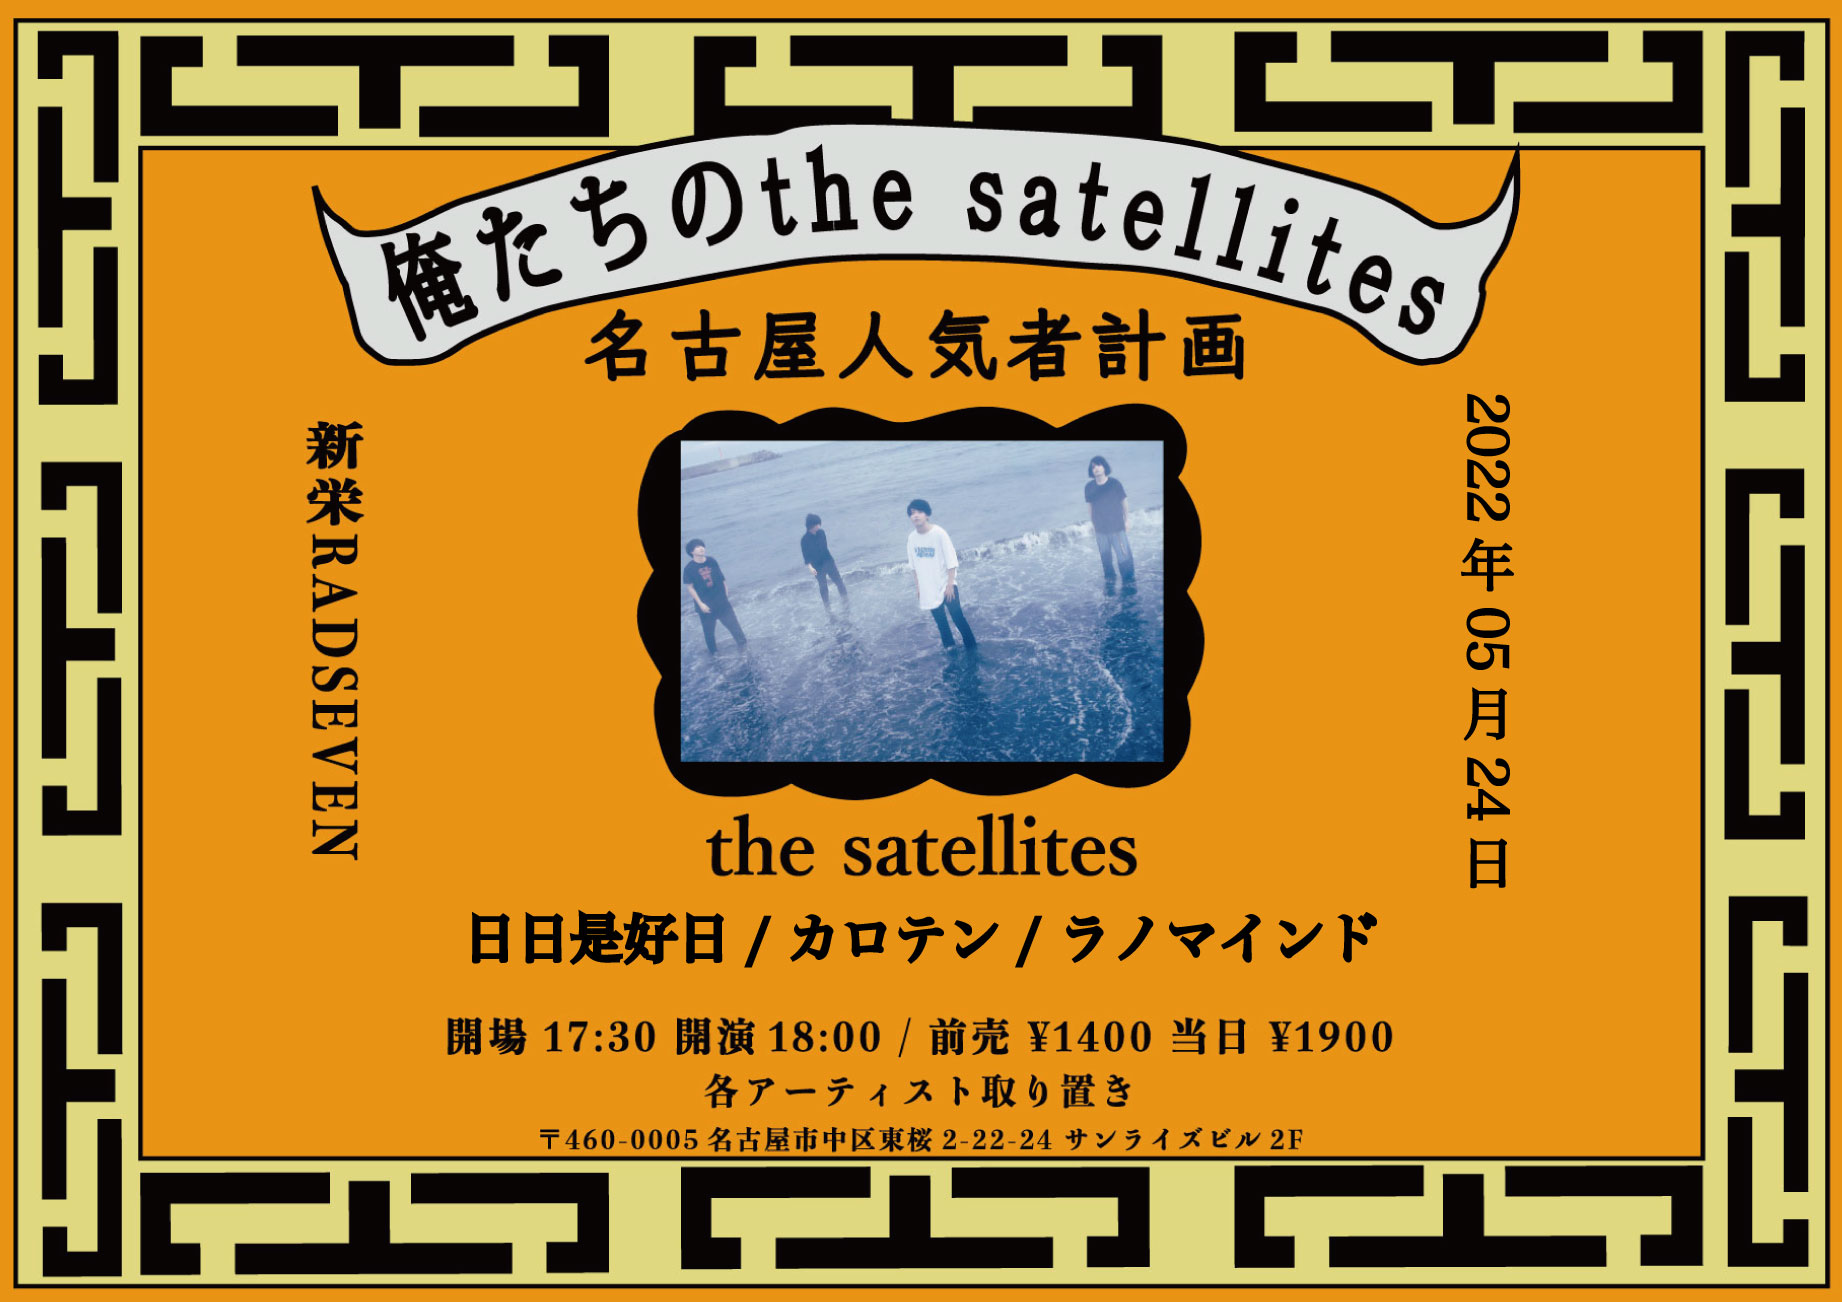 俺たちのthe satellites 名古屋人気者計画